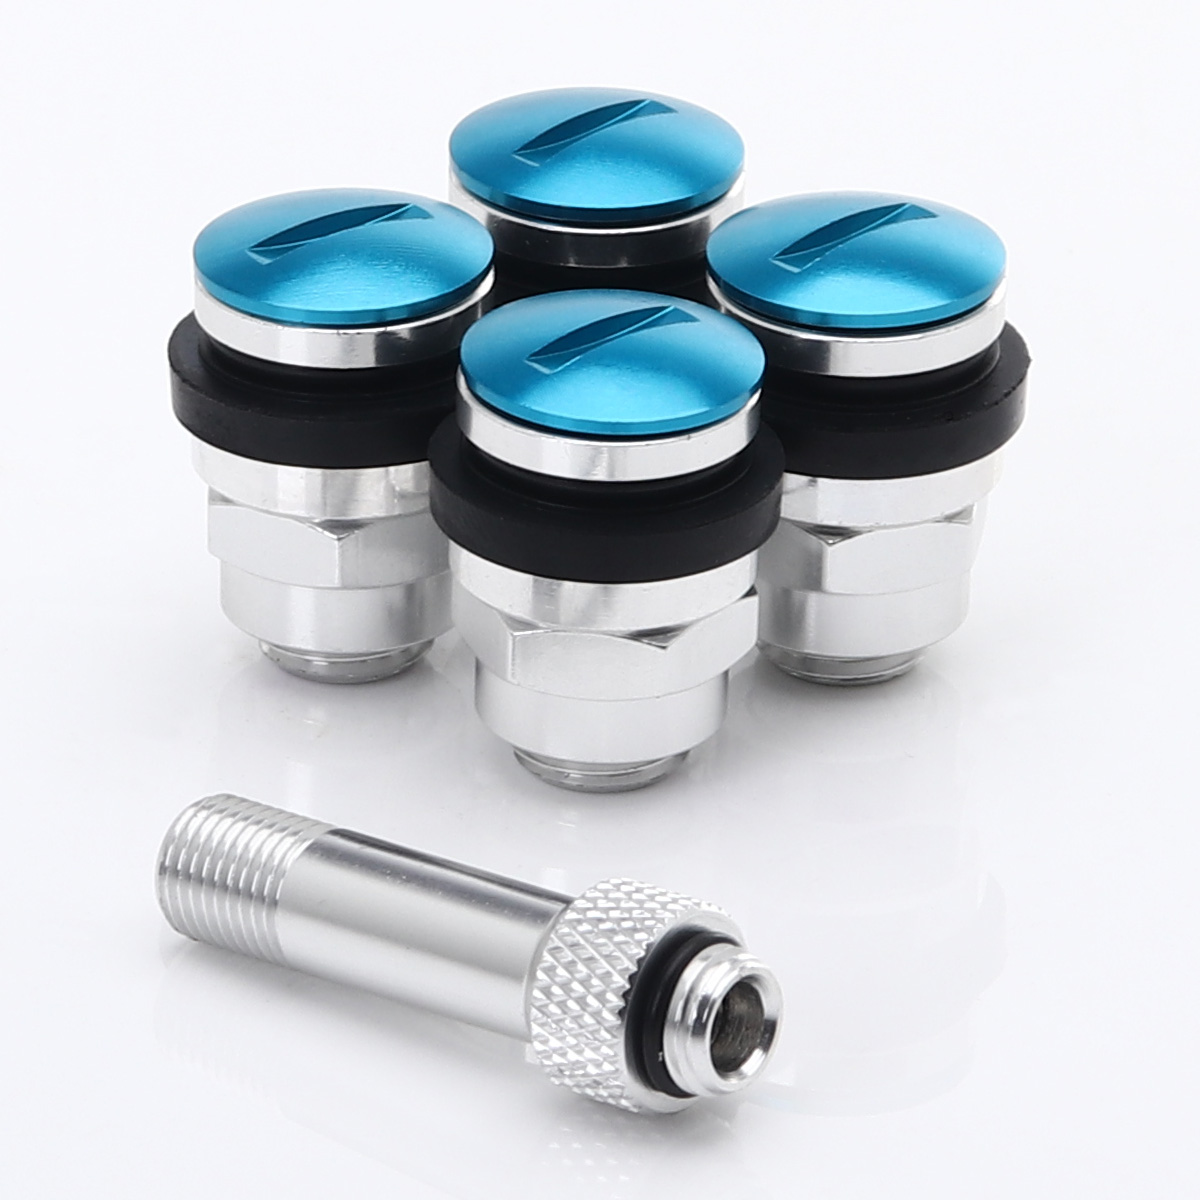 Set of Flat aluminum air valves JR v1 - BLUE